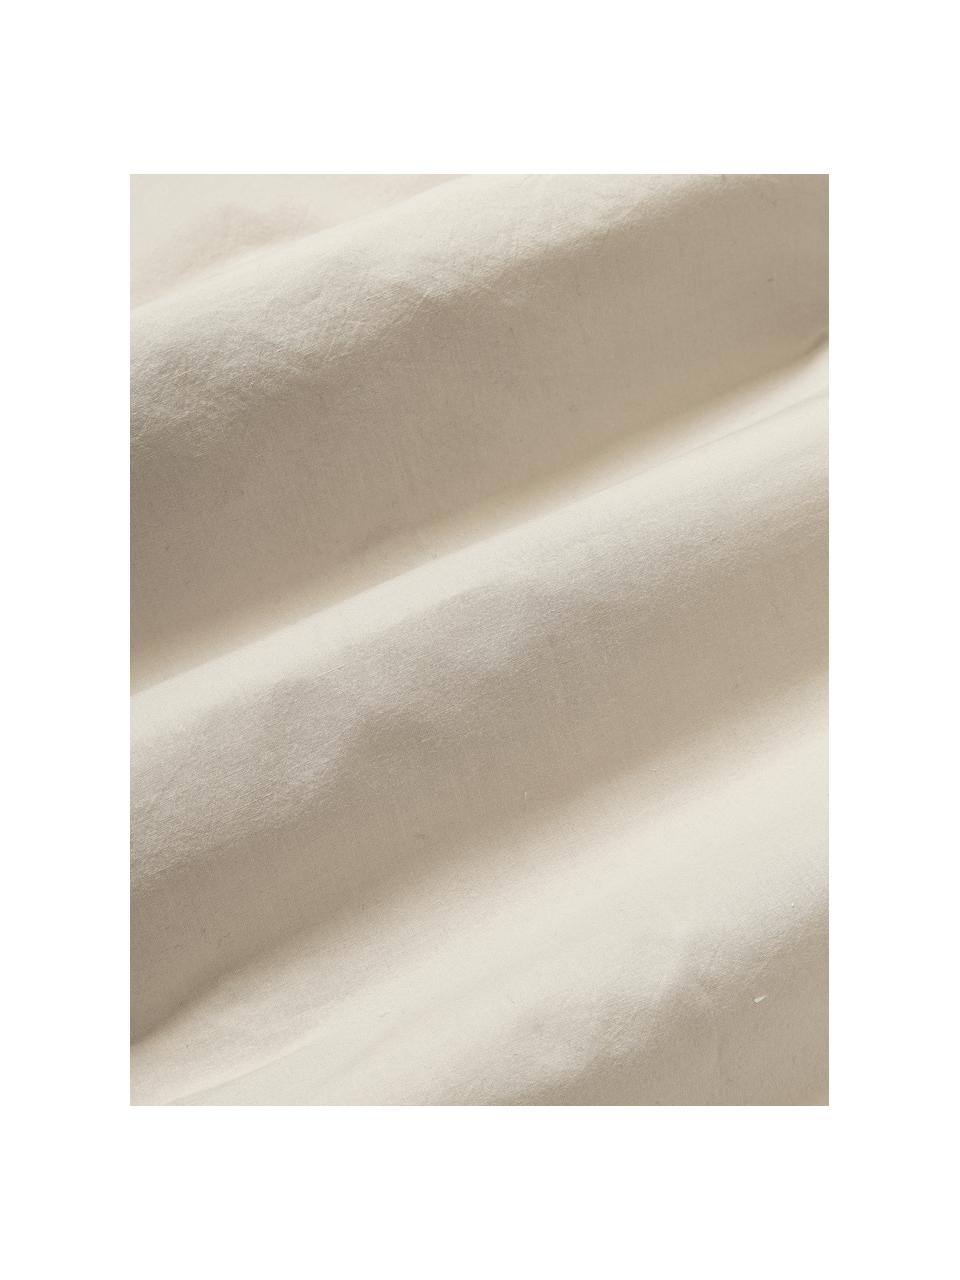 Taie d'oreiller en percale de coton avec ornementation tuftée Fia, 2 pièces, Beige clair, larg. 40 x long. 80 cm